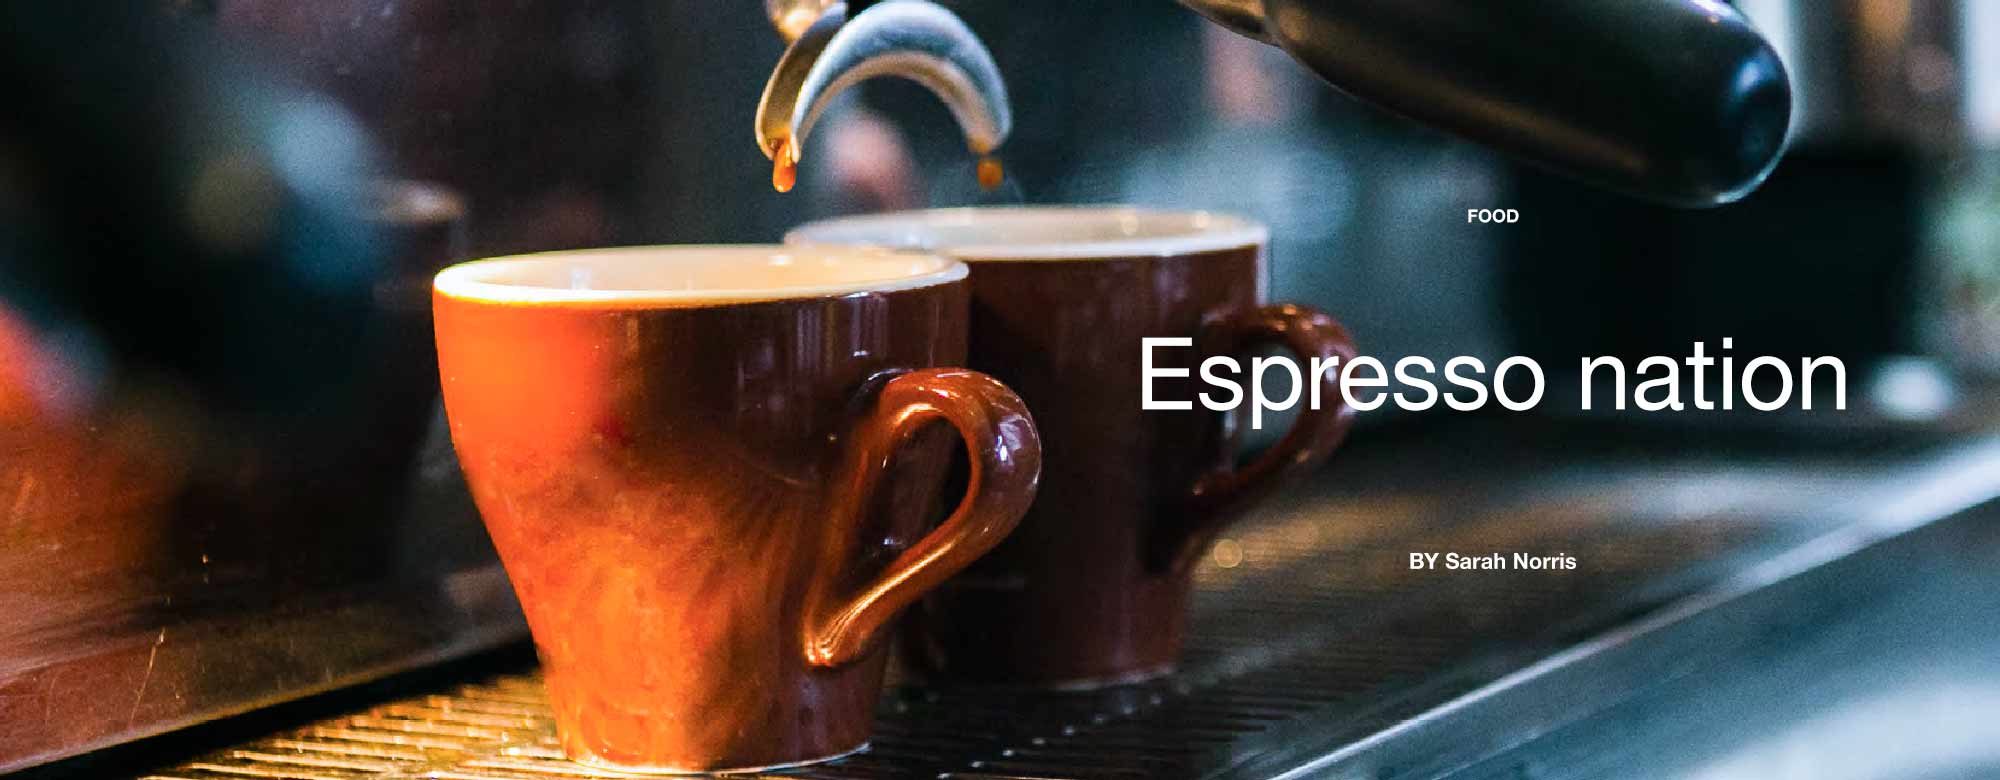 Espresso nation